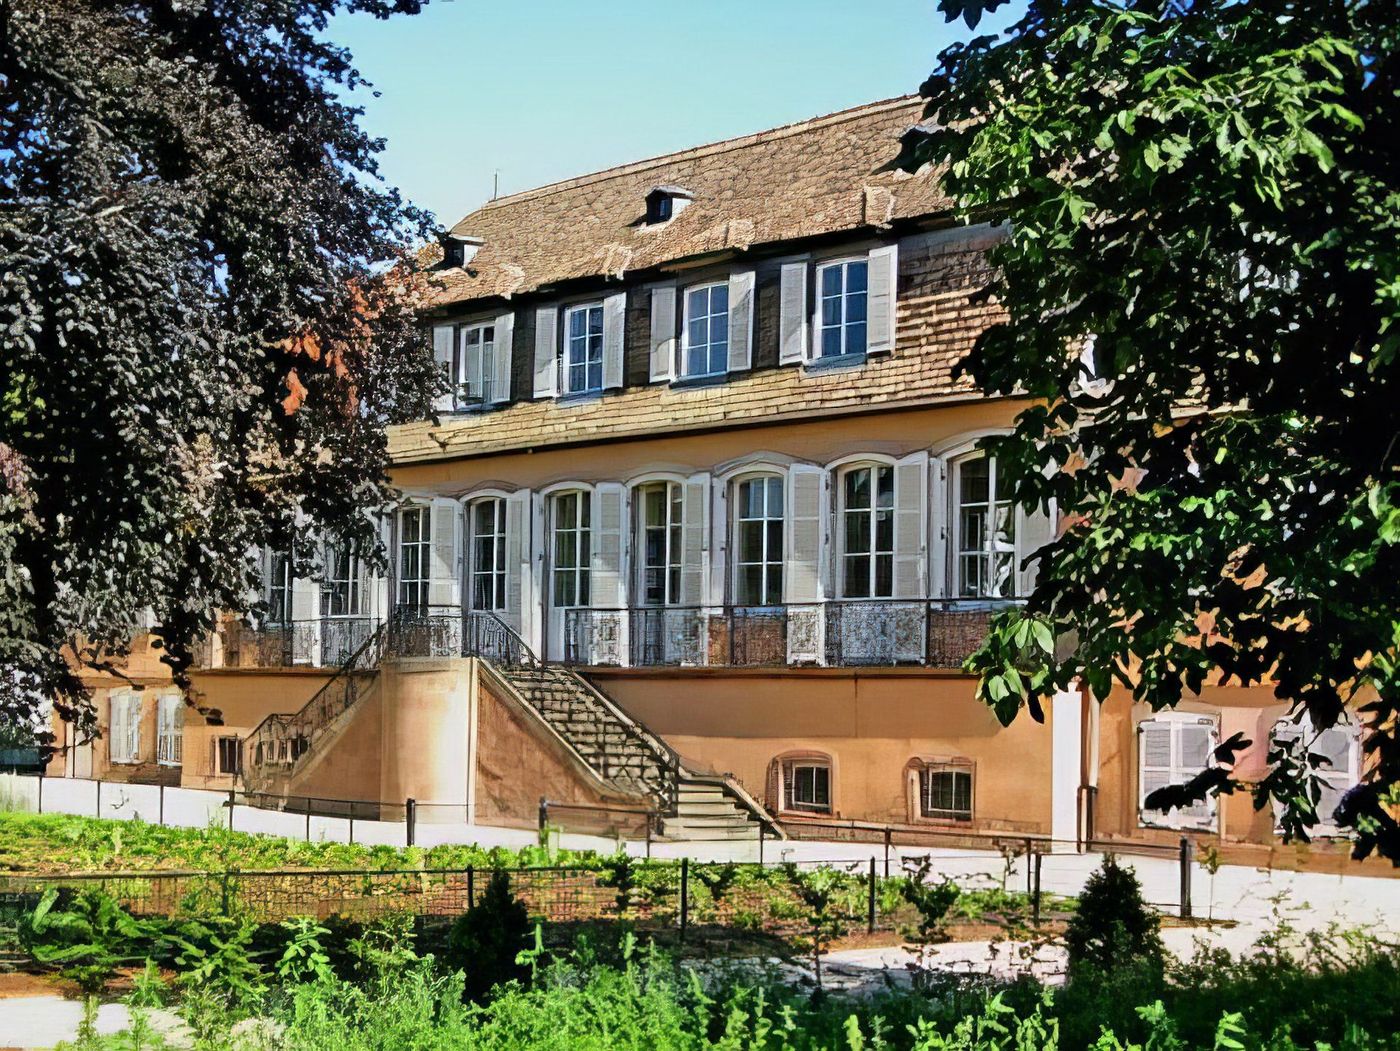 Maison bourgeoise à Illkirch